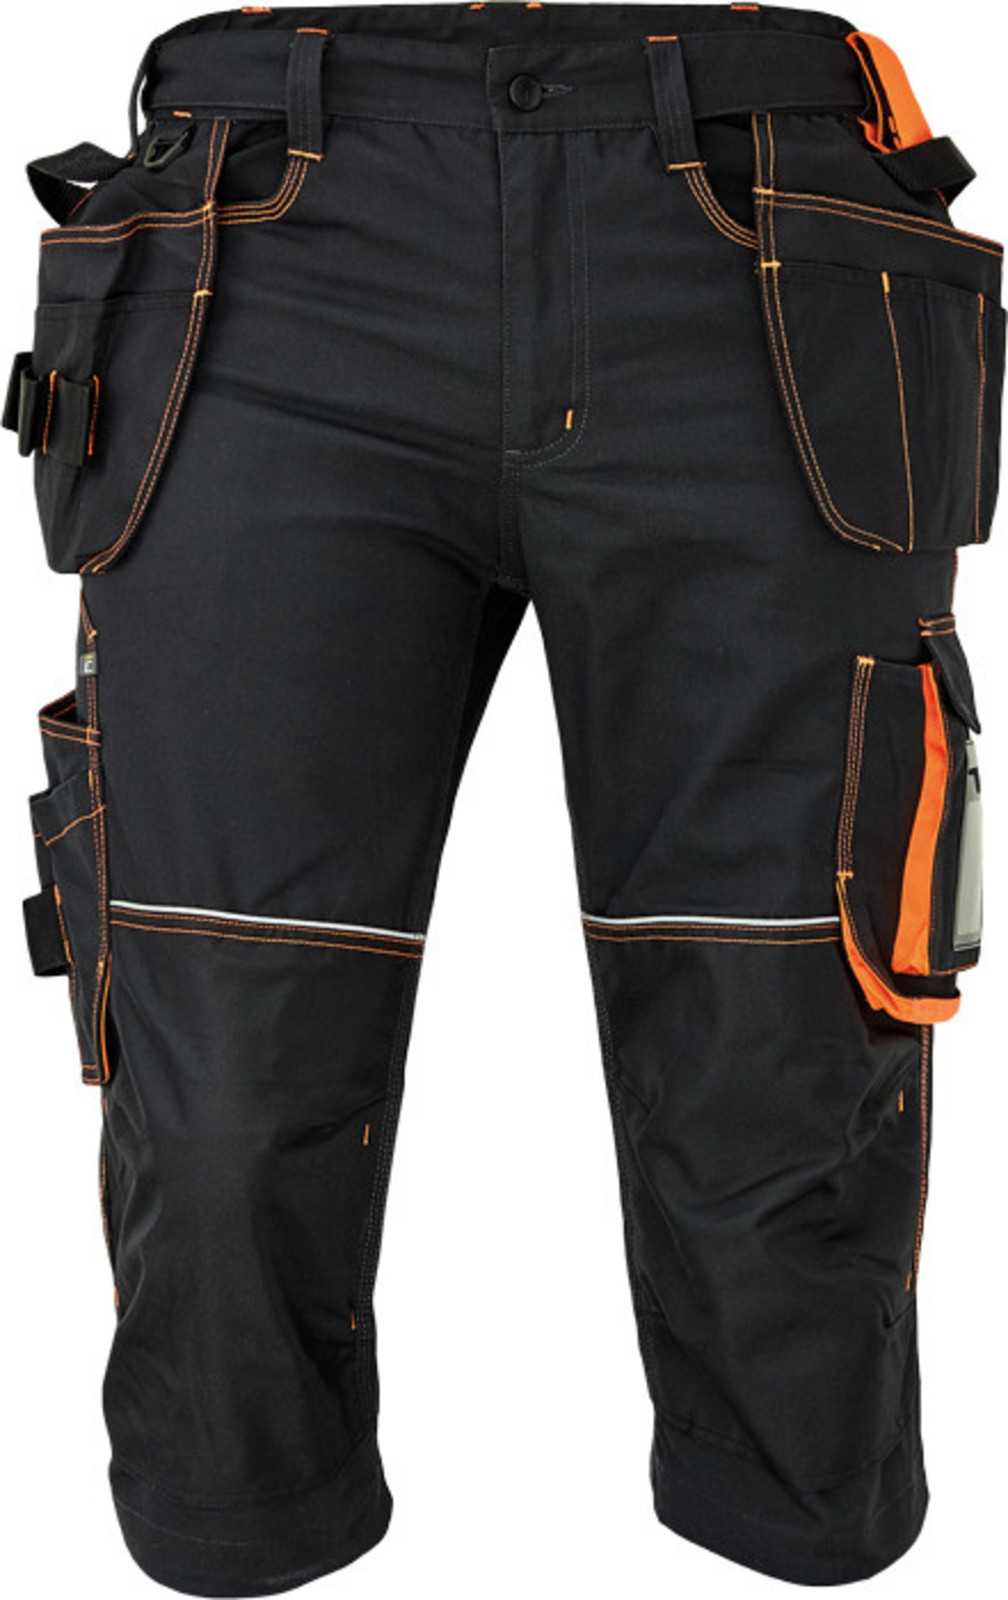 Pánske pracovné 3/4 nohavice Cerva Knoxfield 320 - veľkosť: 54, farba: antracit/oranžová